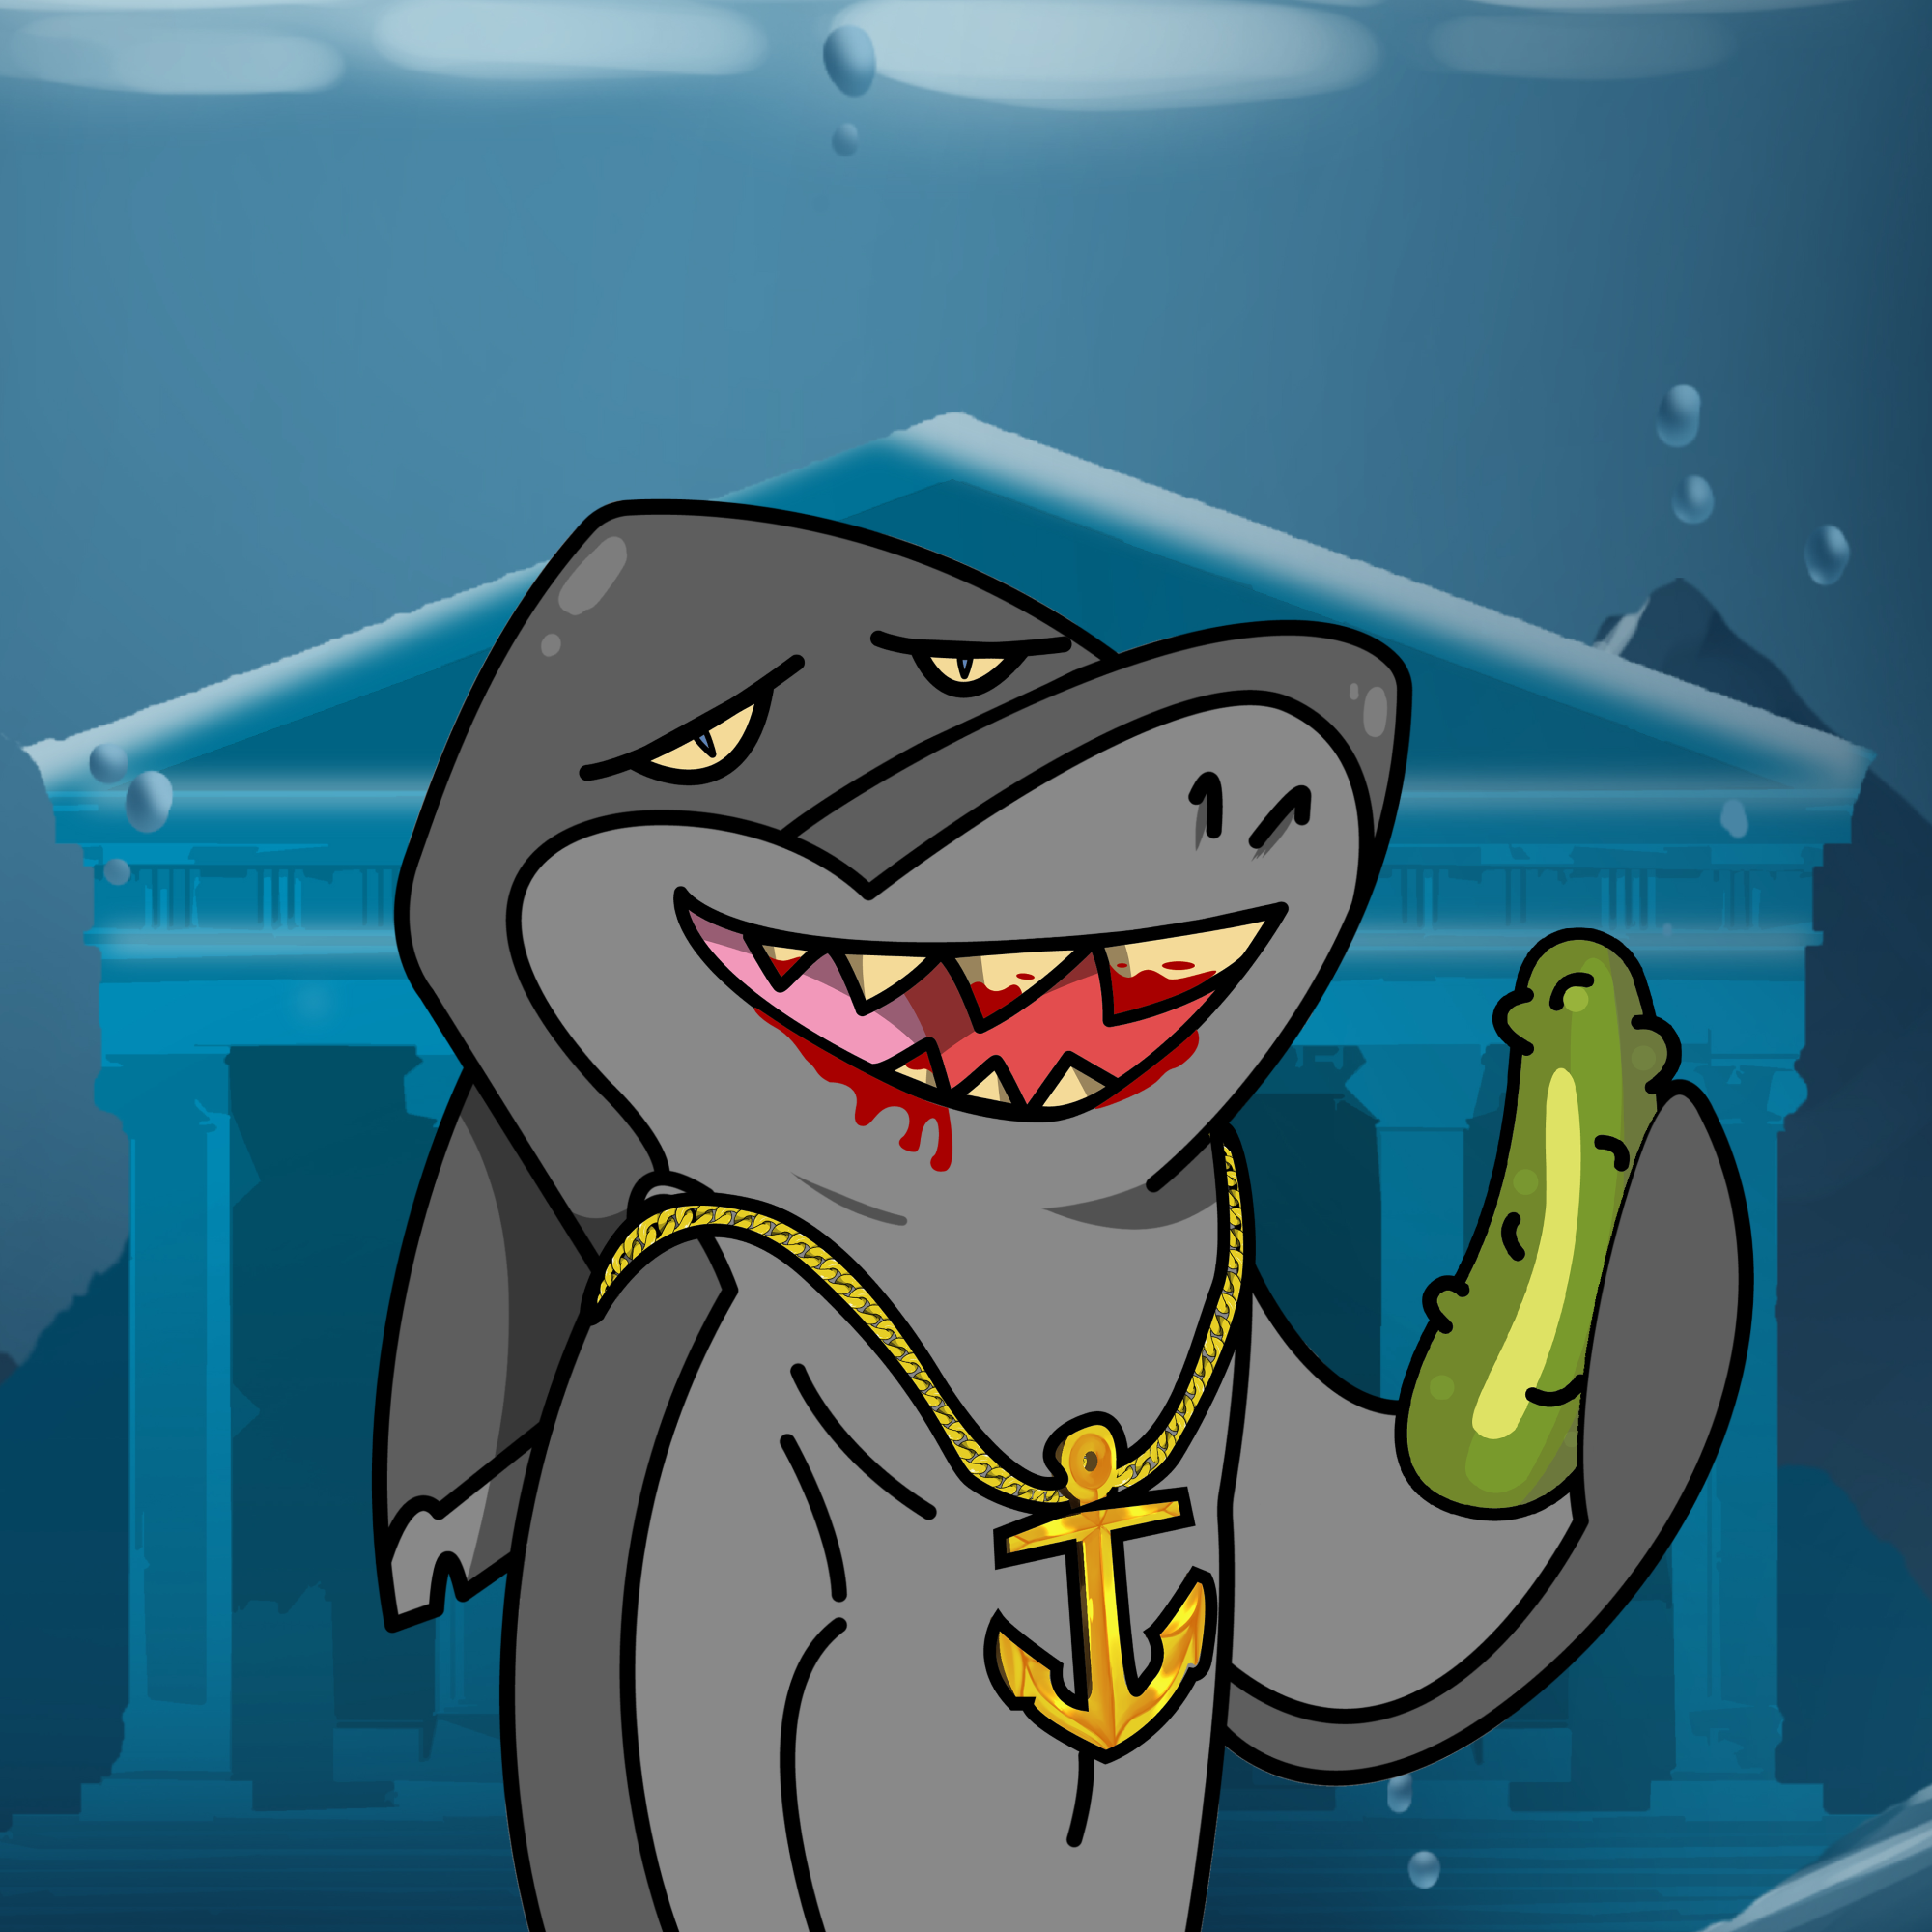 Solantis Shark #2721